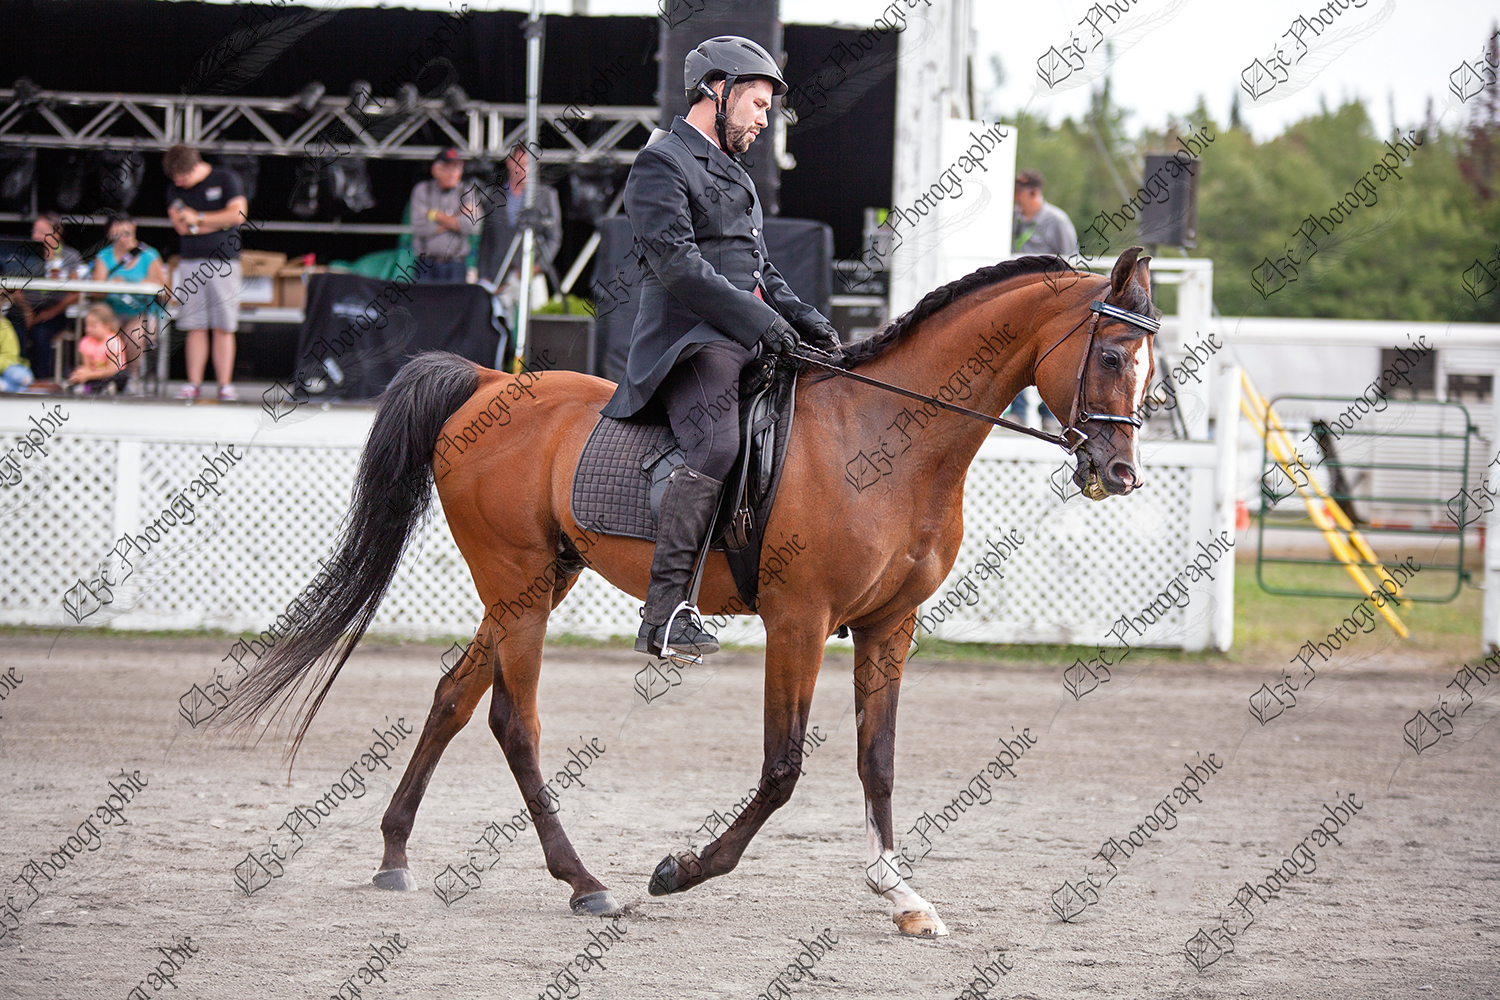 elze_photo_5637_participant_competition_equestre_river_horse